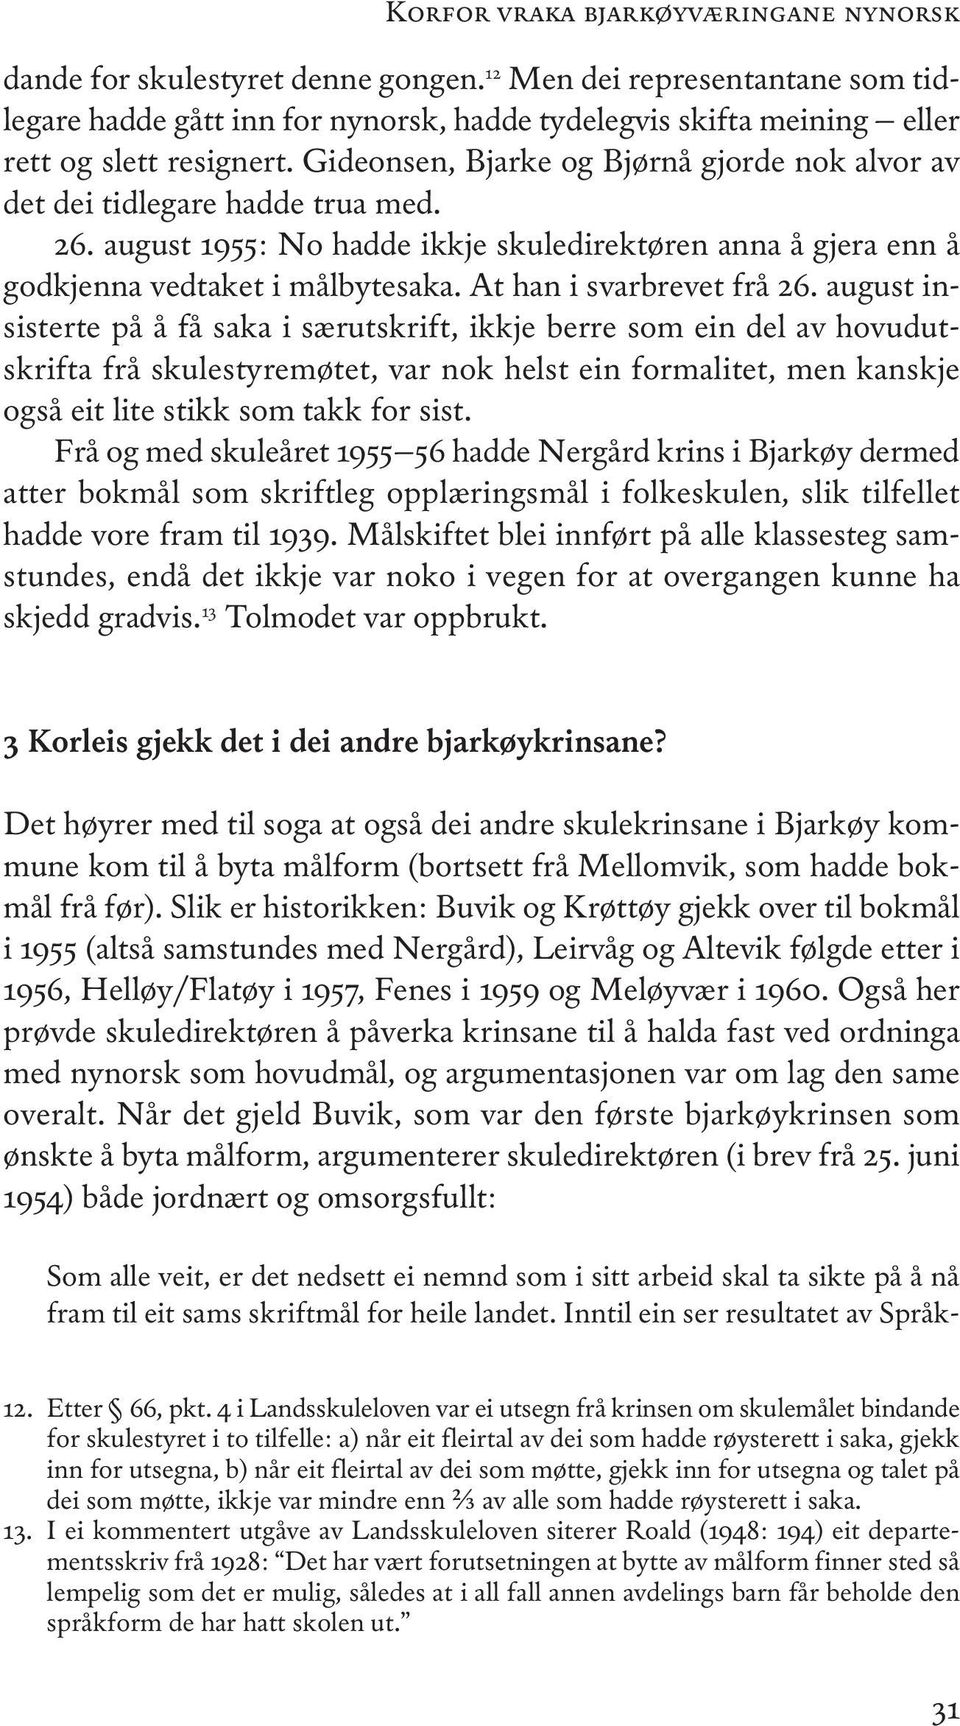 gideonsen, Bjarke og Bjørnå gjorde nok alvor av det dei tidlegare hadde trua med. 26. august 1955: no hadde ikkje skuledirektøren anna å gjera enn å godkjenna vedtaket i målbytesaka.